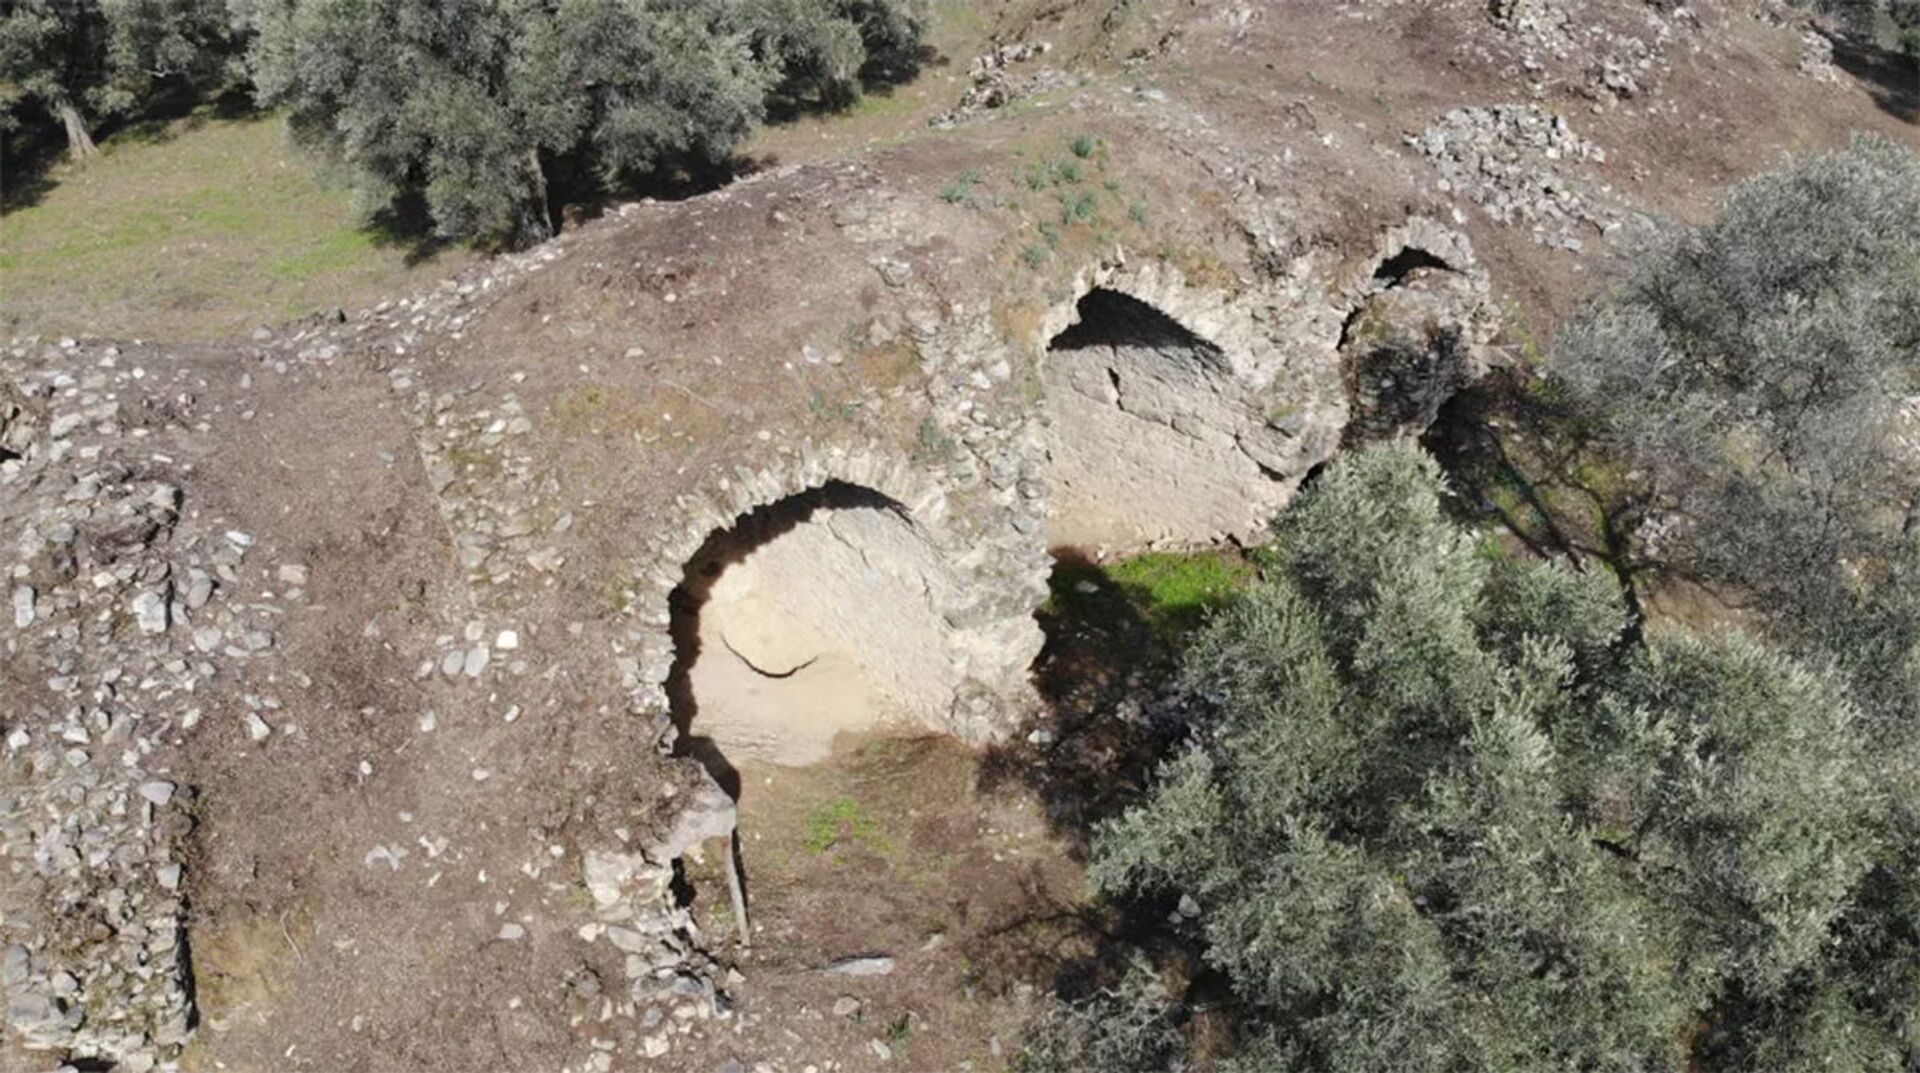 Arena de gladiadores da era romana é descoberta na Turquia (FOTOS) - Sputnik Brasil, 1920, 21.04.2021